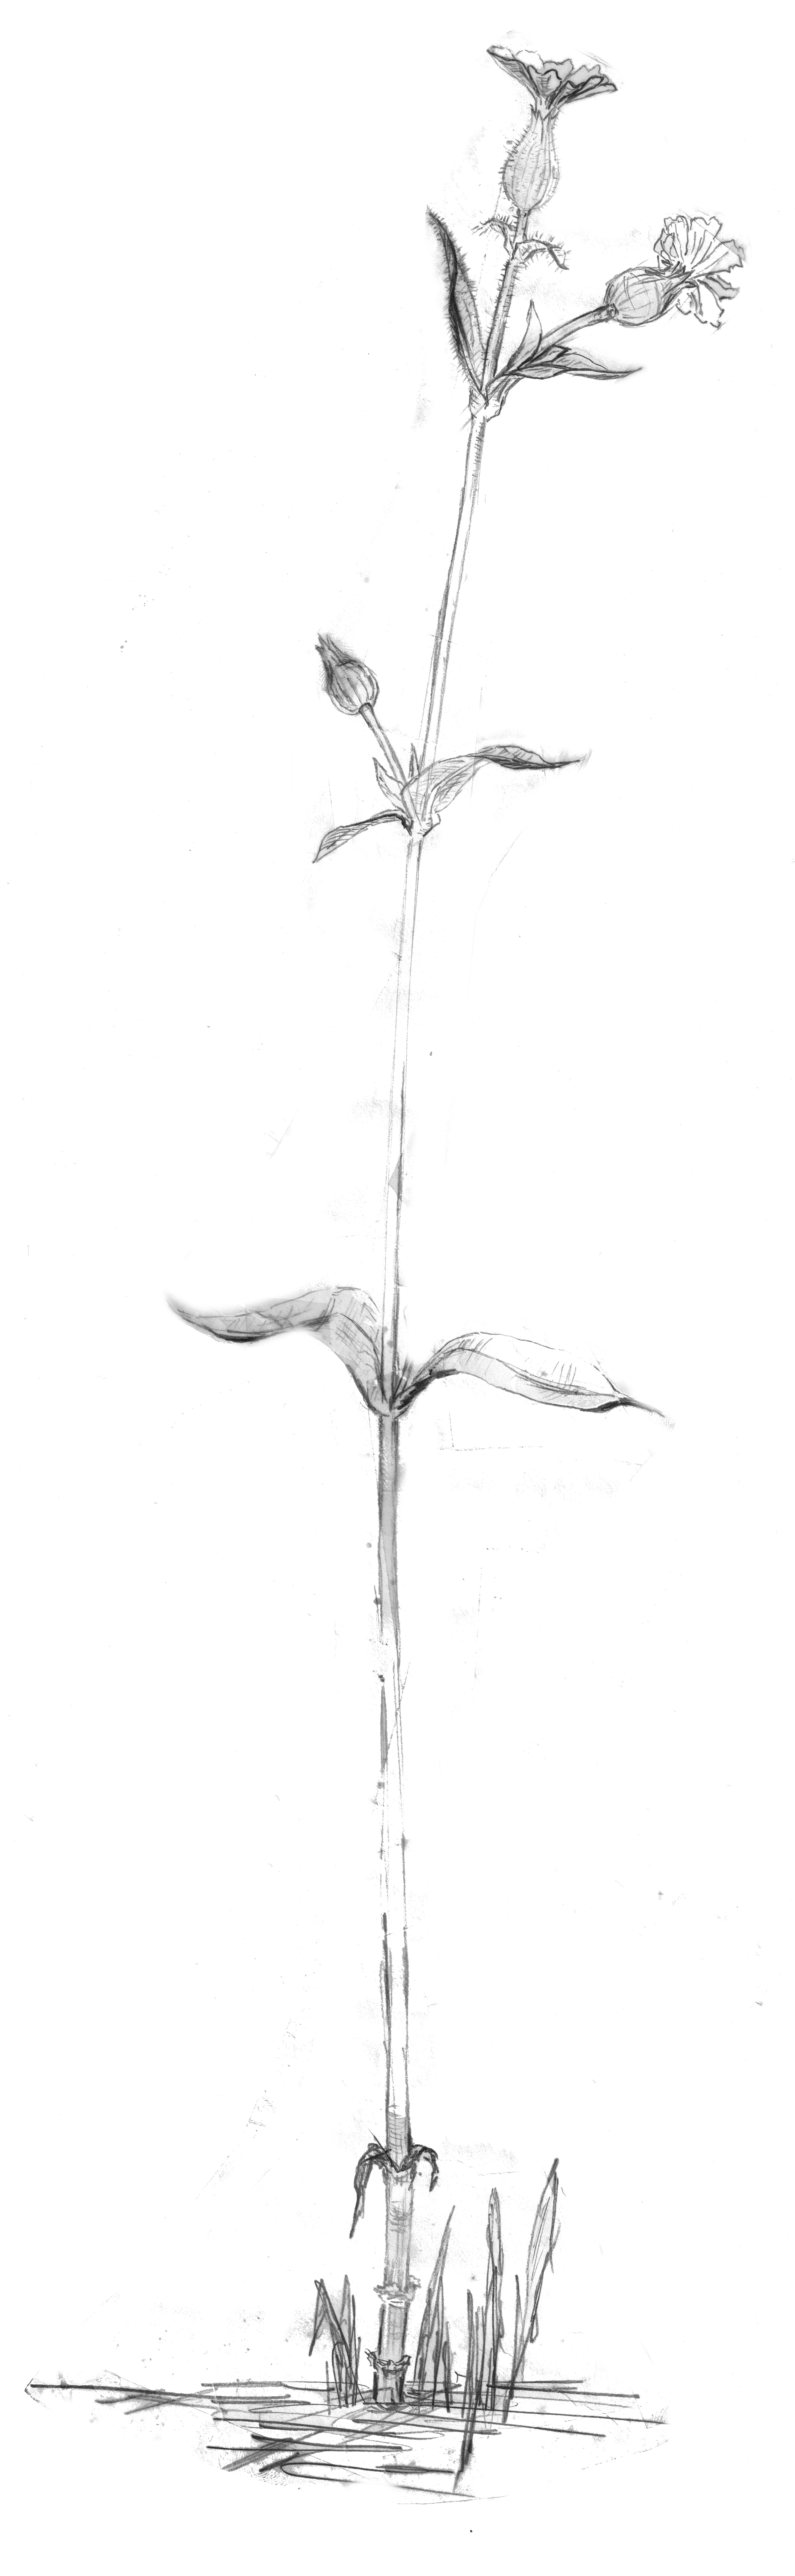 grey flower plant sketch